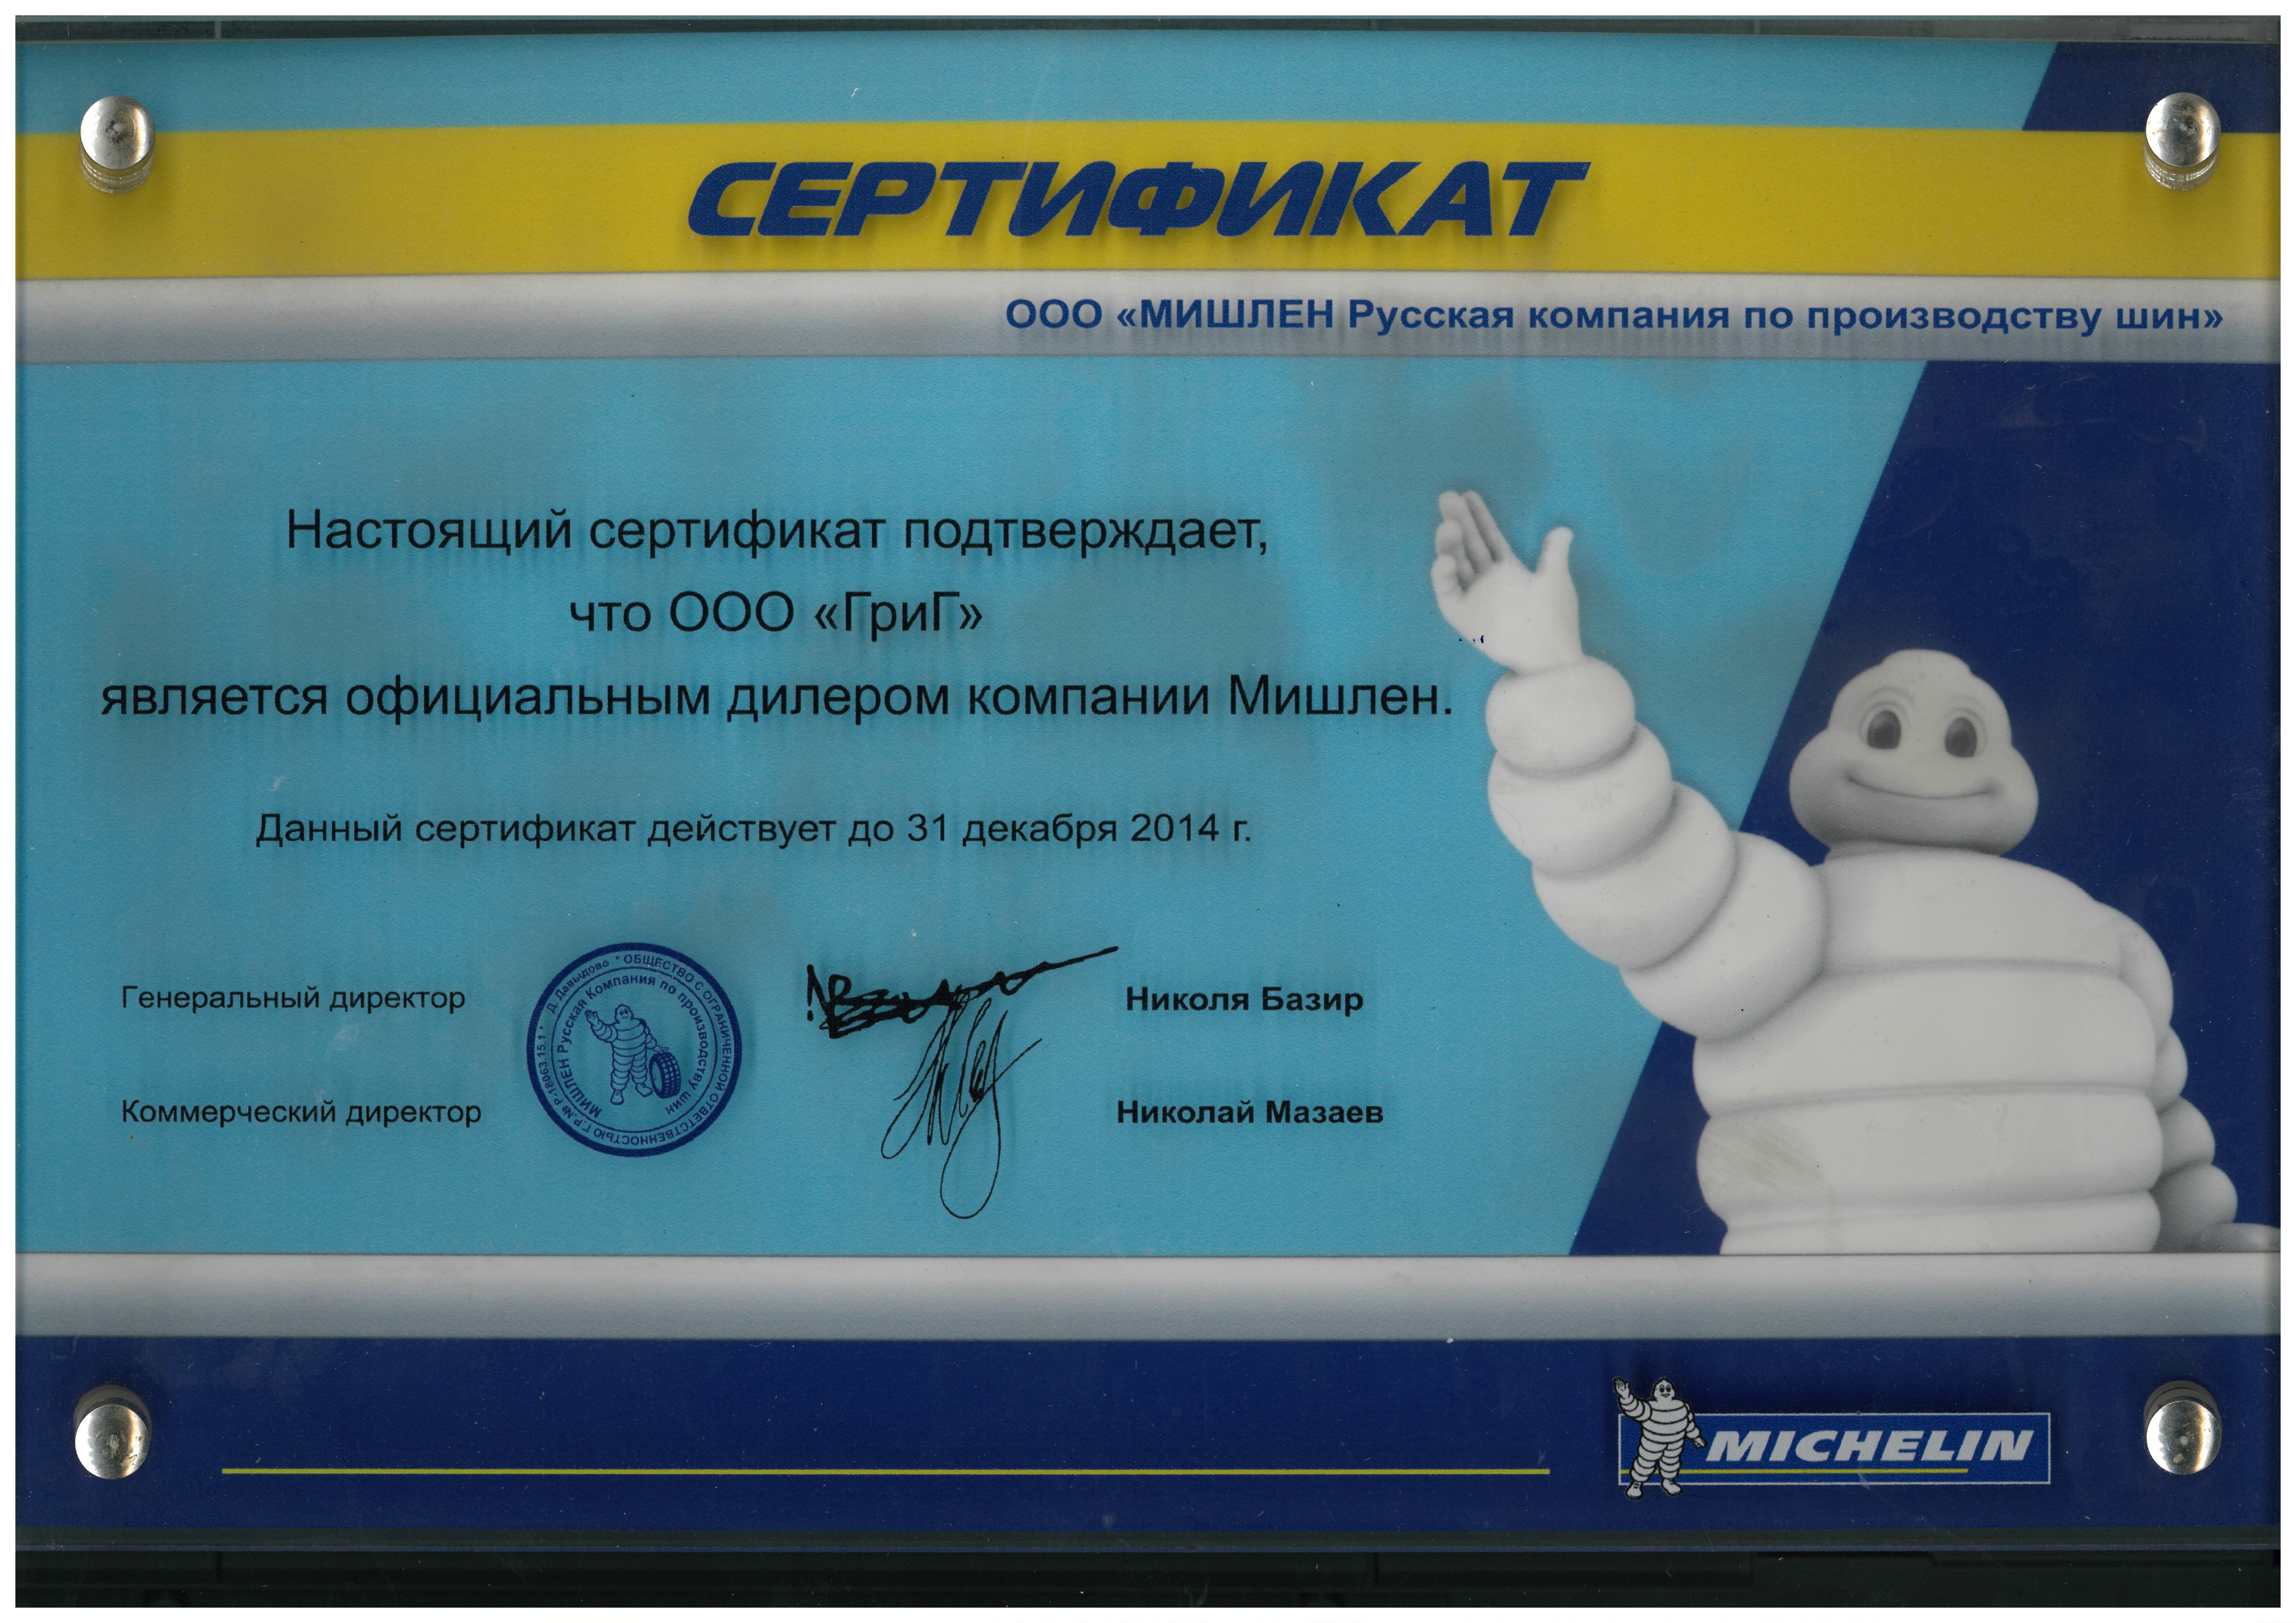 Официальный дилер компании Мишлен 2014